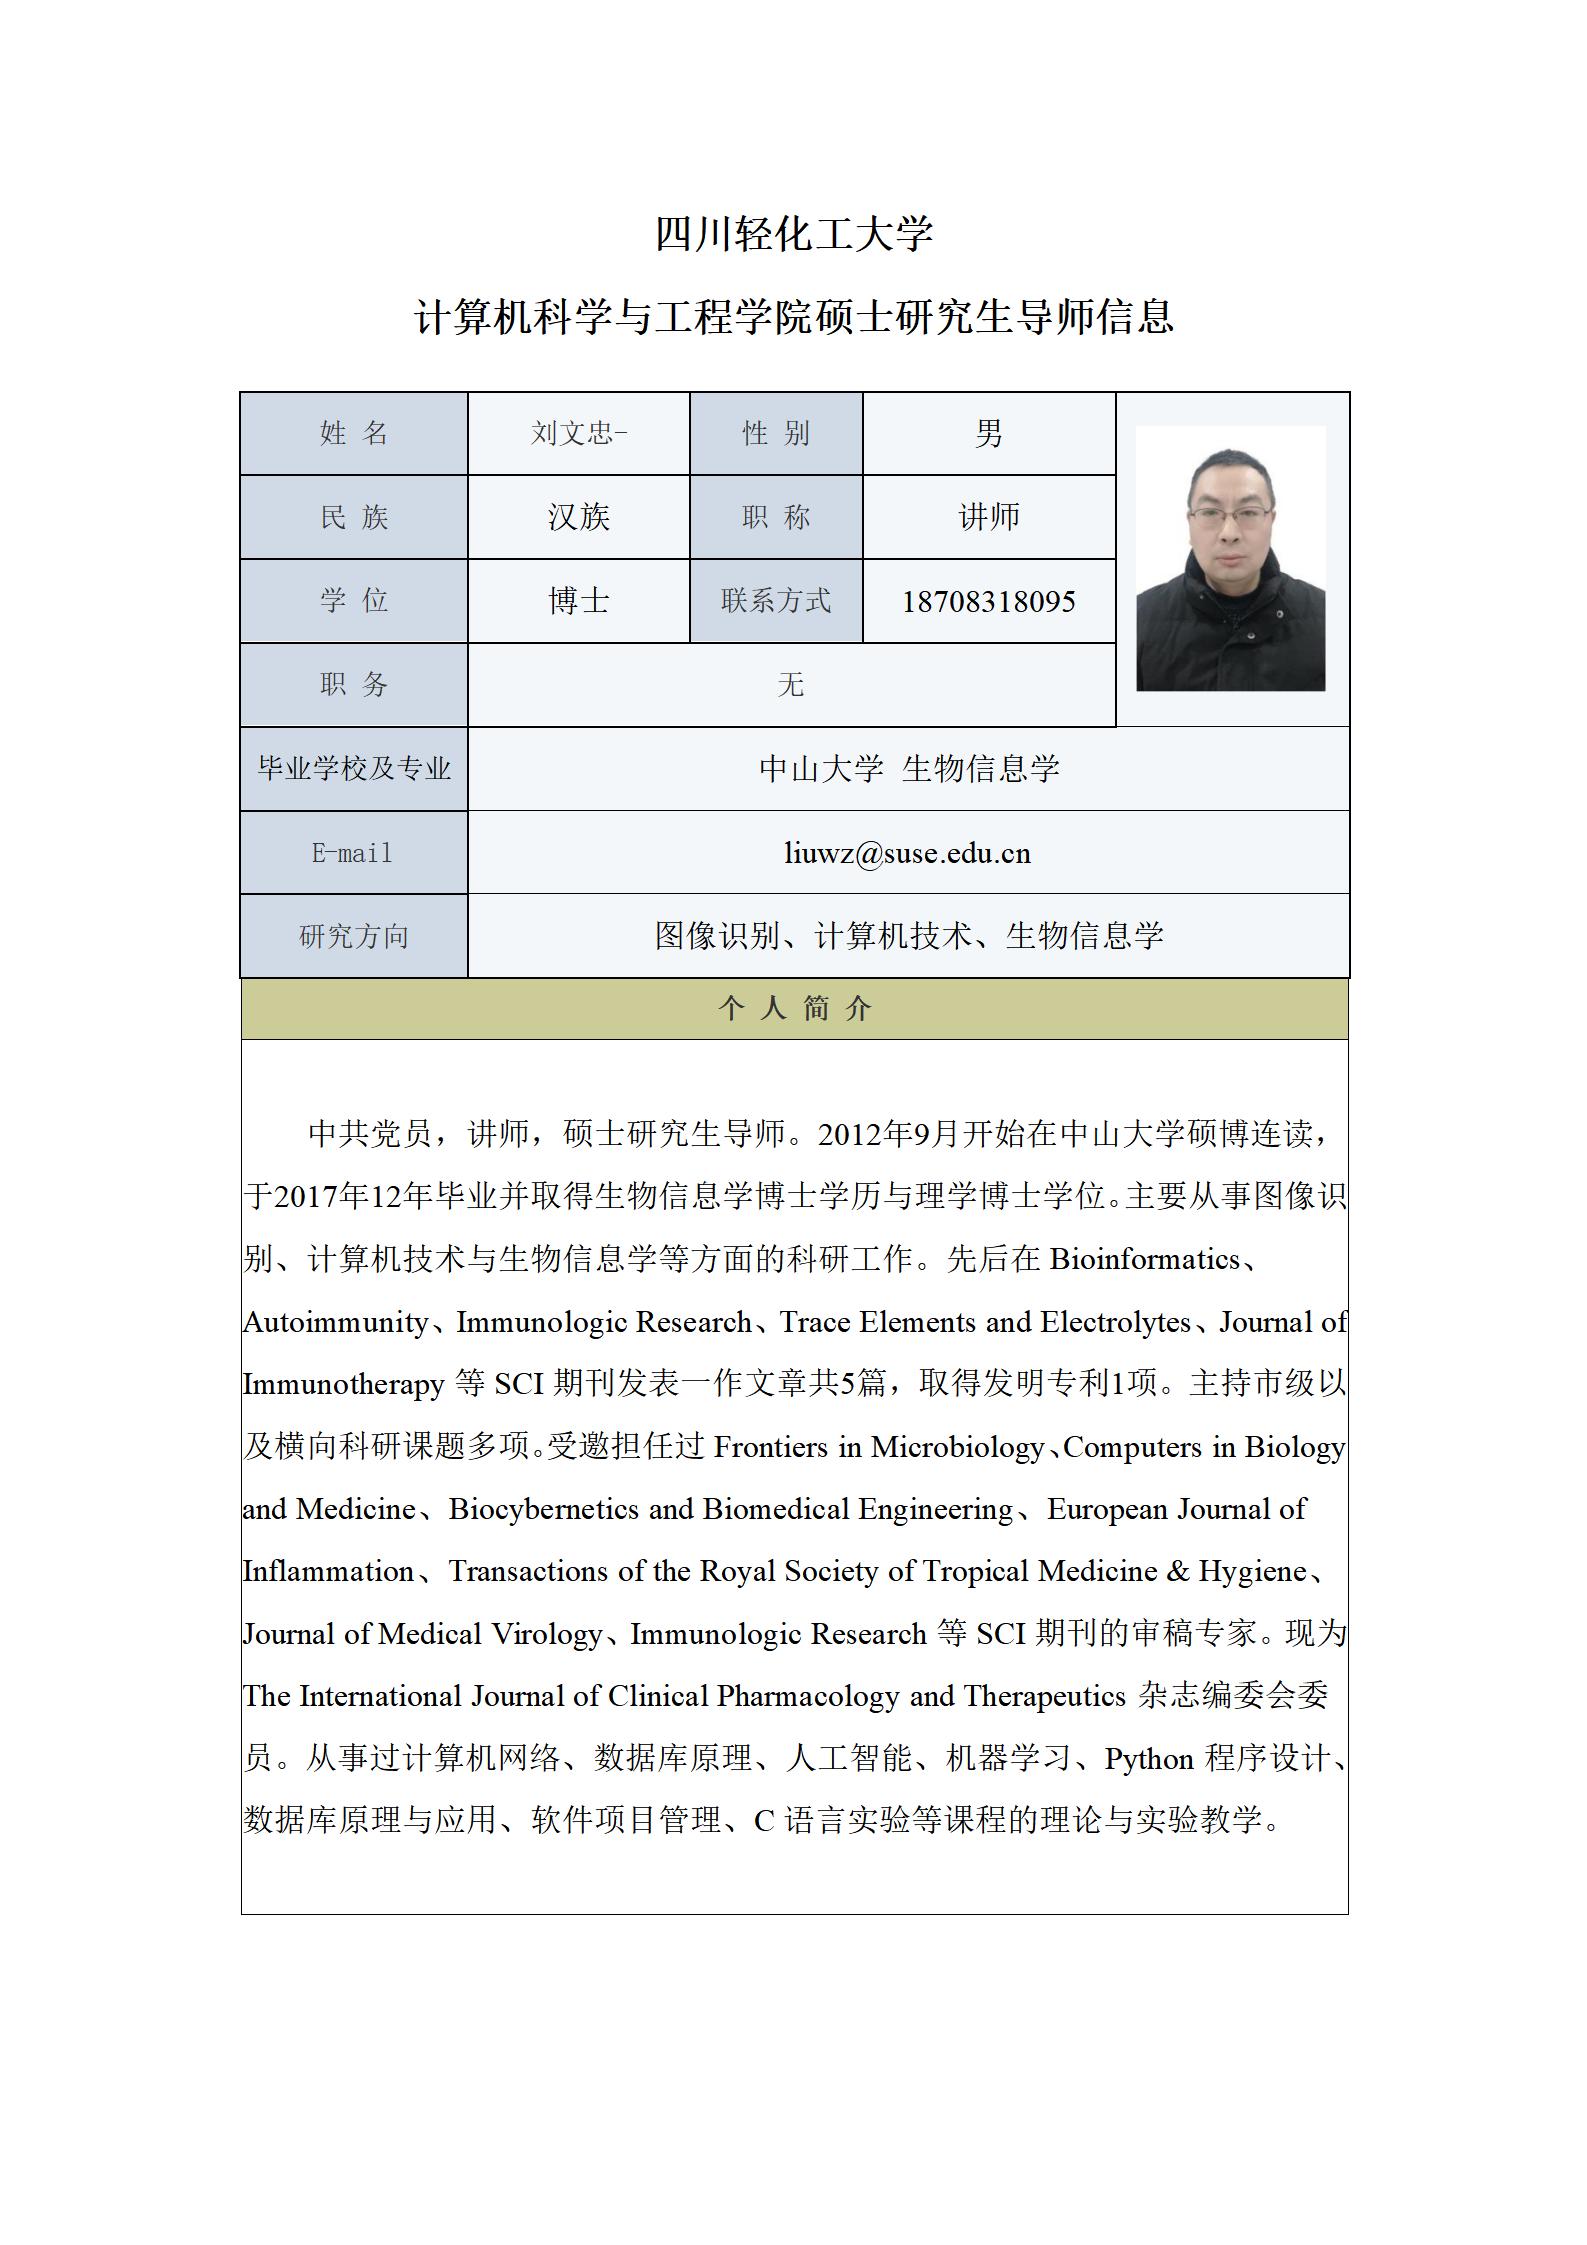 刘文忠-2023年计算机科学与工程学院硕士生导师信息表_01.jpg